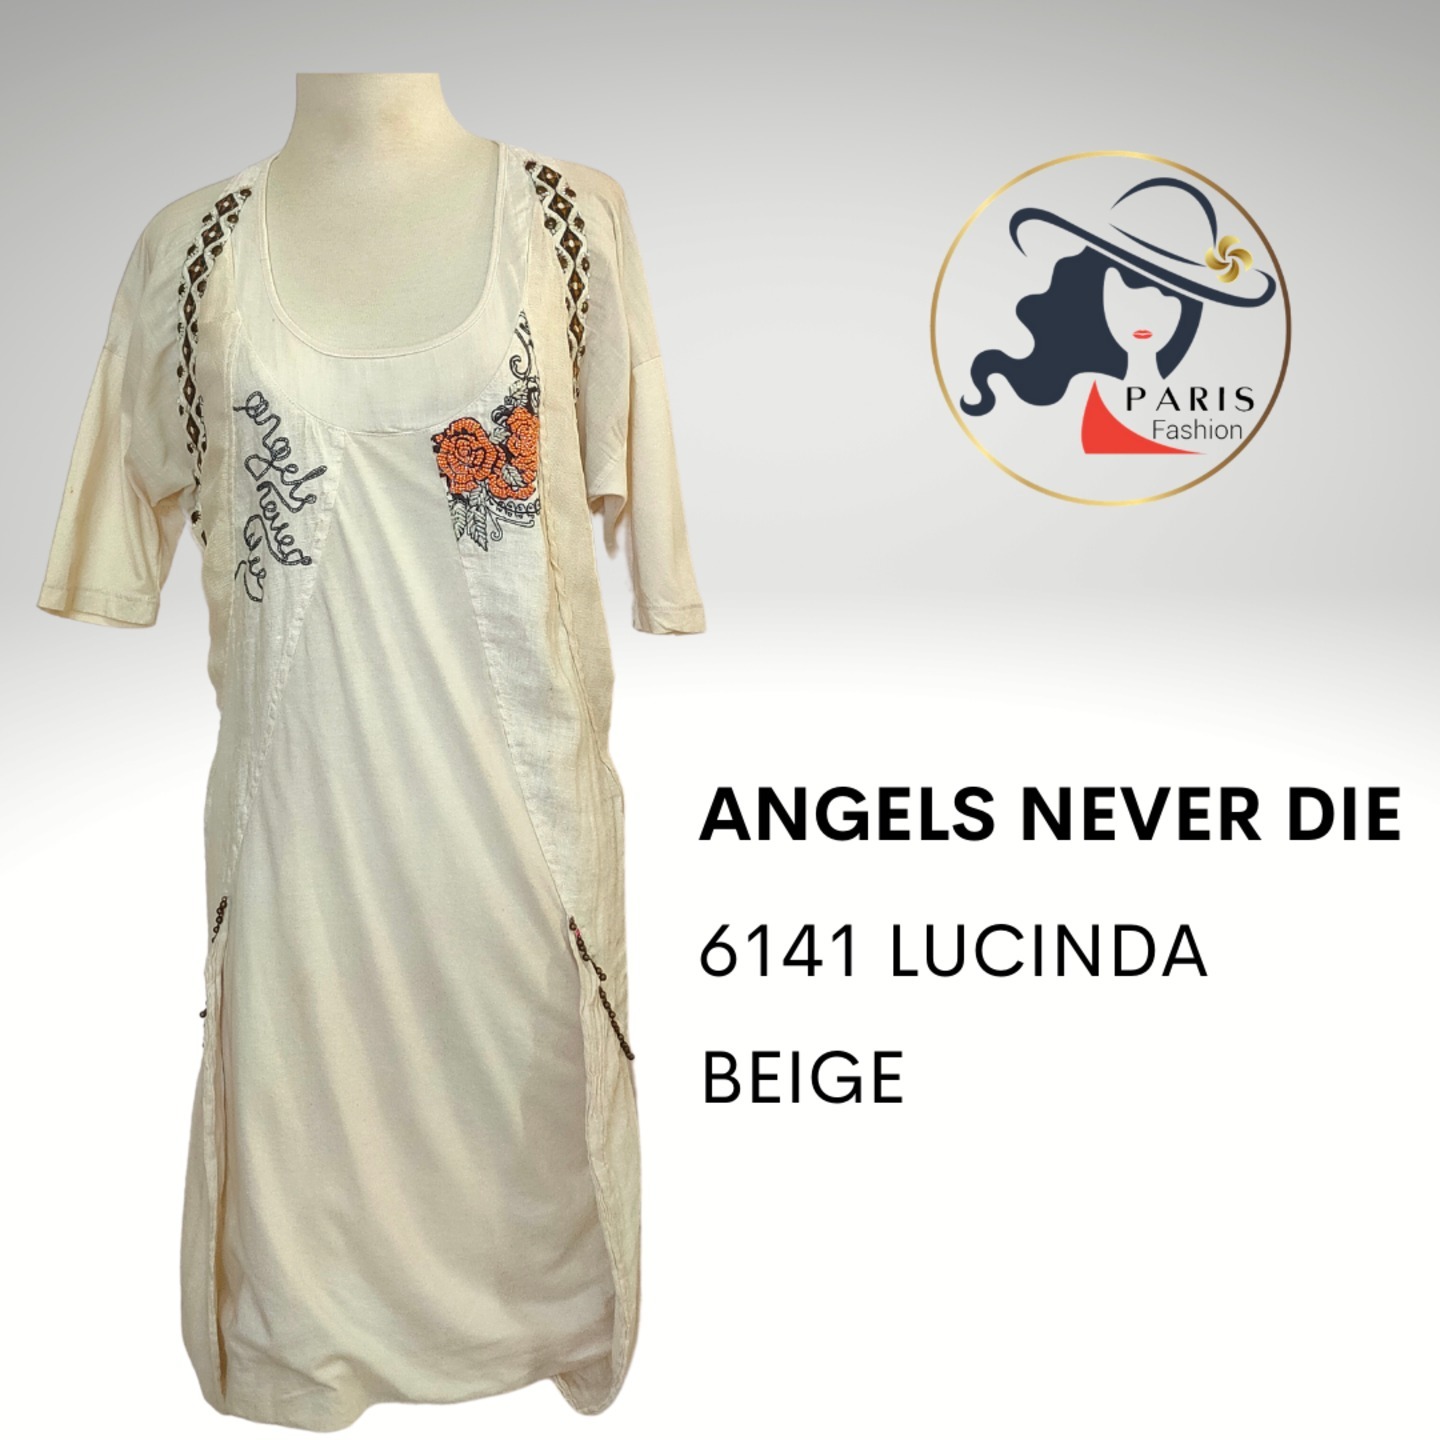 ANGELS NEVER DIE 6141 LUCINDA DRESS